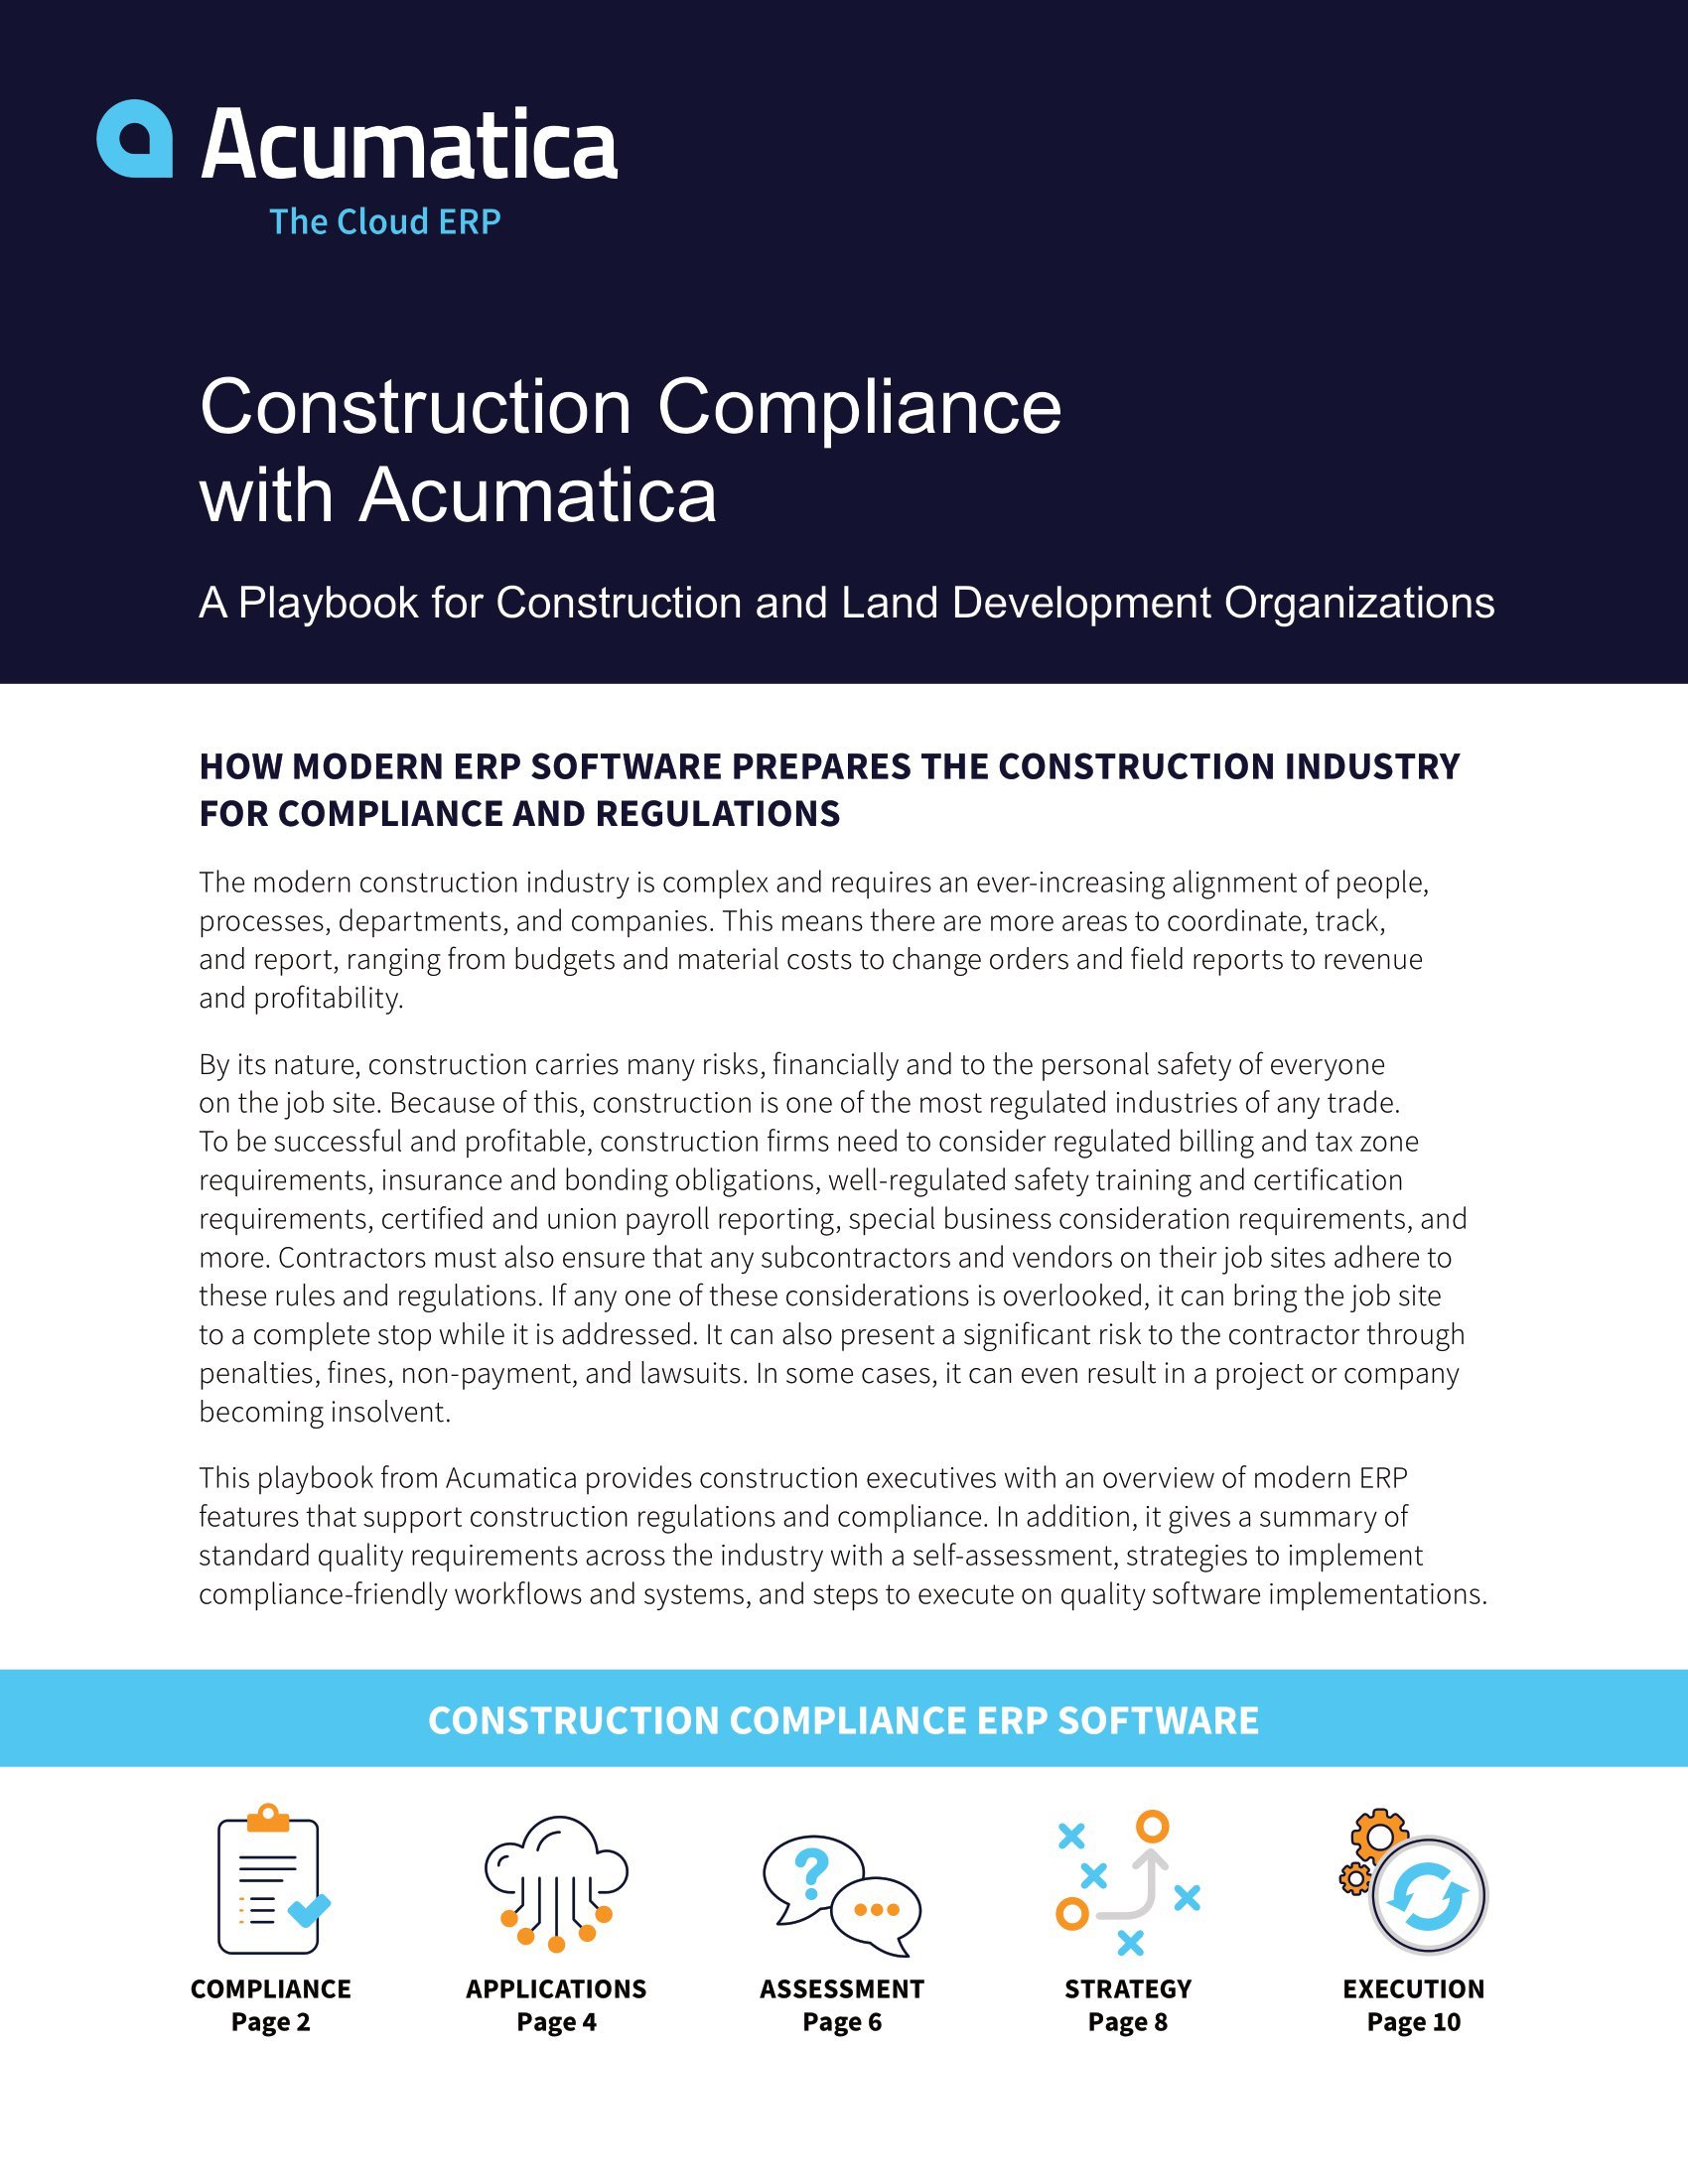 Autant de réglementations en matière de construction, aussi faciles à gérer avec le bon logiciel de conformité en matière de construction